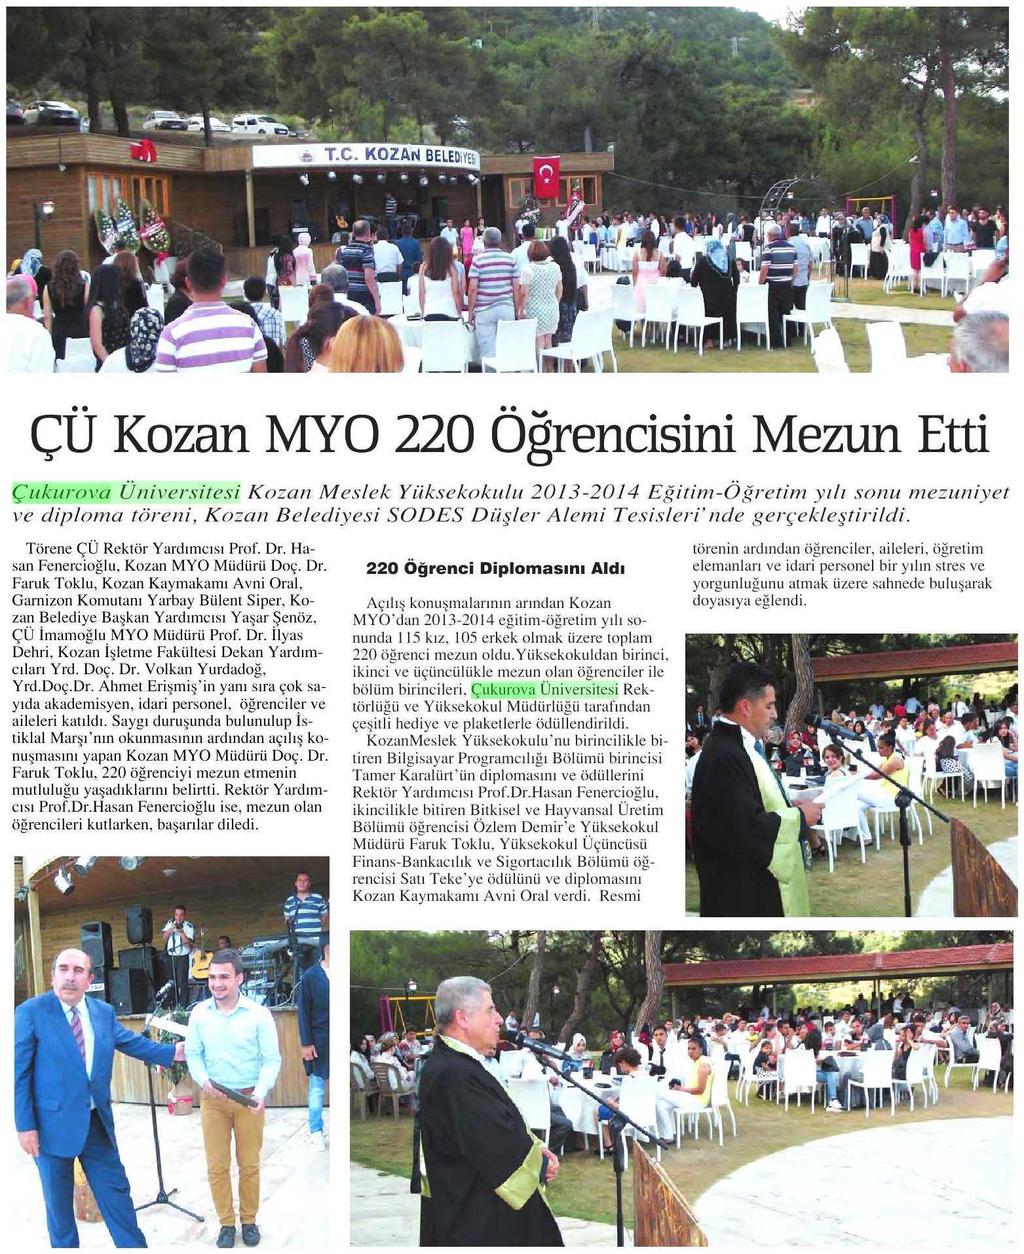 ÇÜ KOZAN MYO 220 ÖGRENCISINI MEZUN ETTI Yayın Adı : Adana Bes